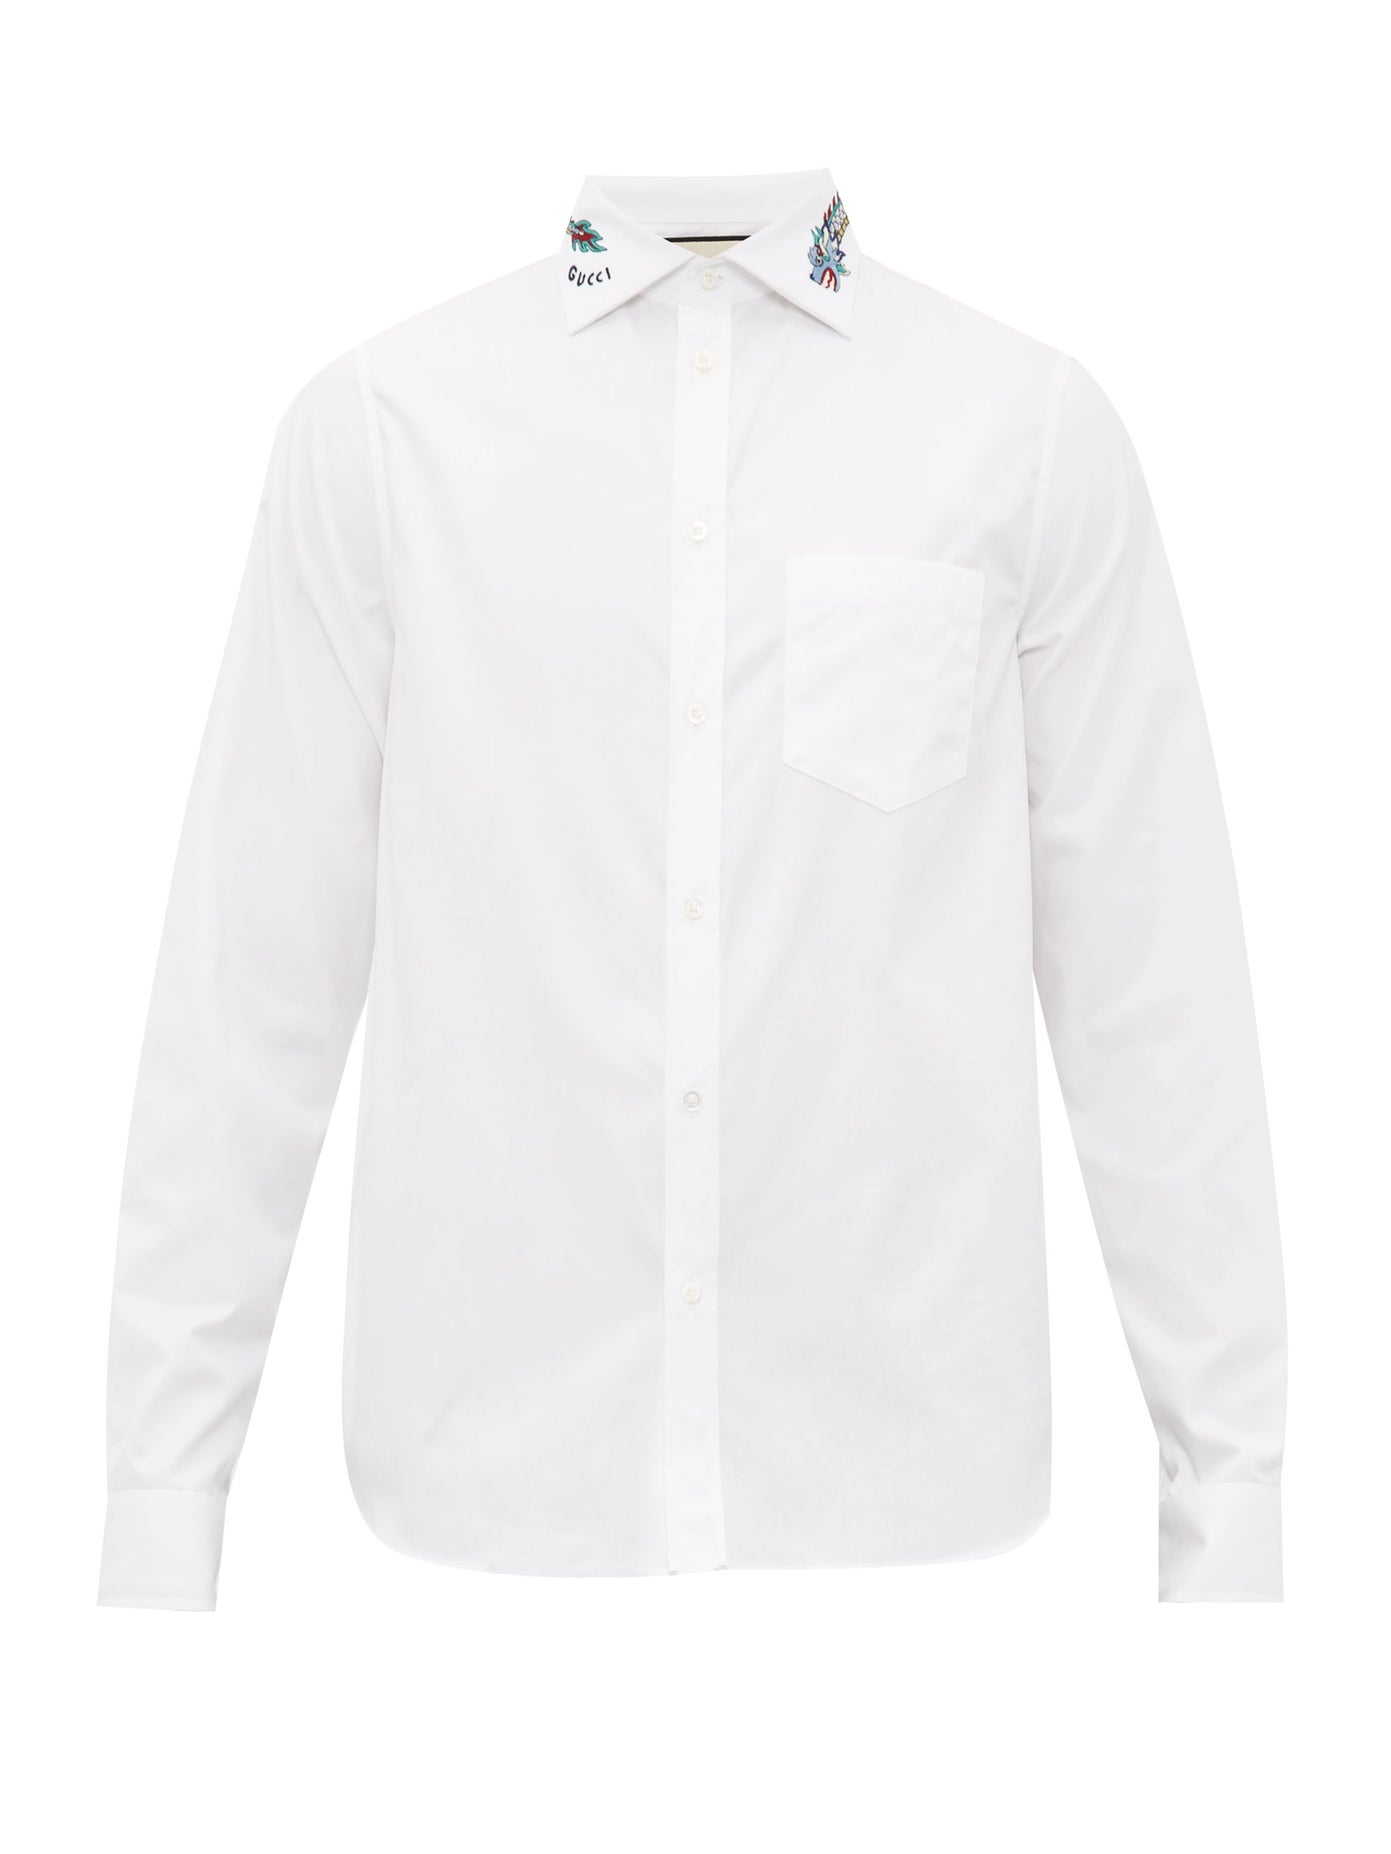 Mua Áo Sơ Mi Gucci Cotton Shirt With Symbols Màu Trắng Size S  Gucci  Mua  tại Vua Hàng Hiệu h031480